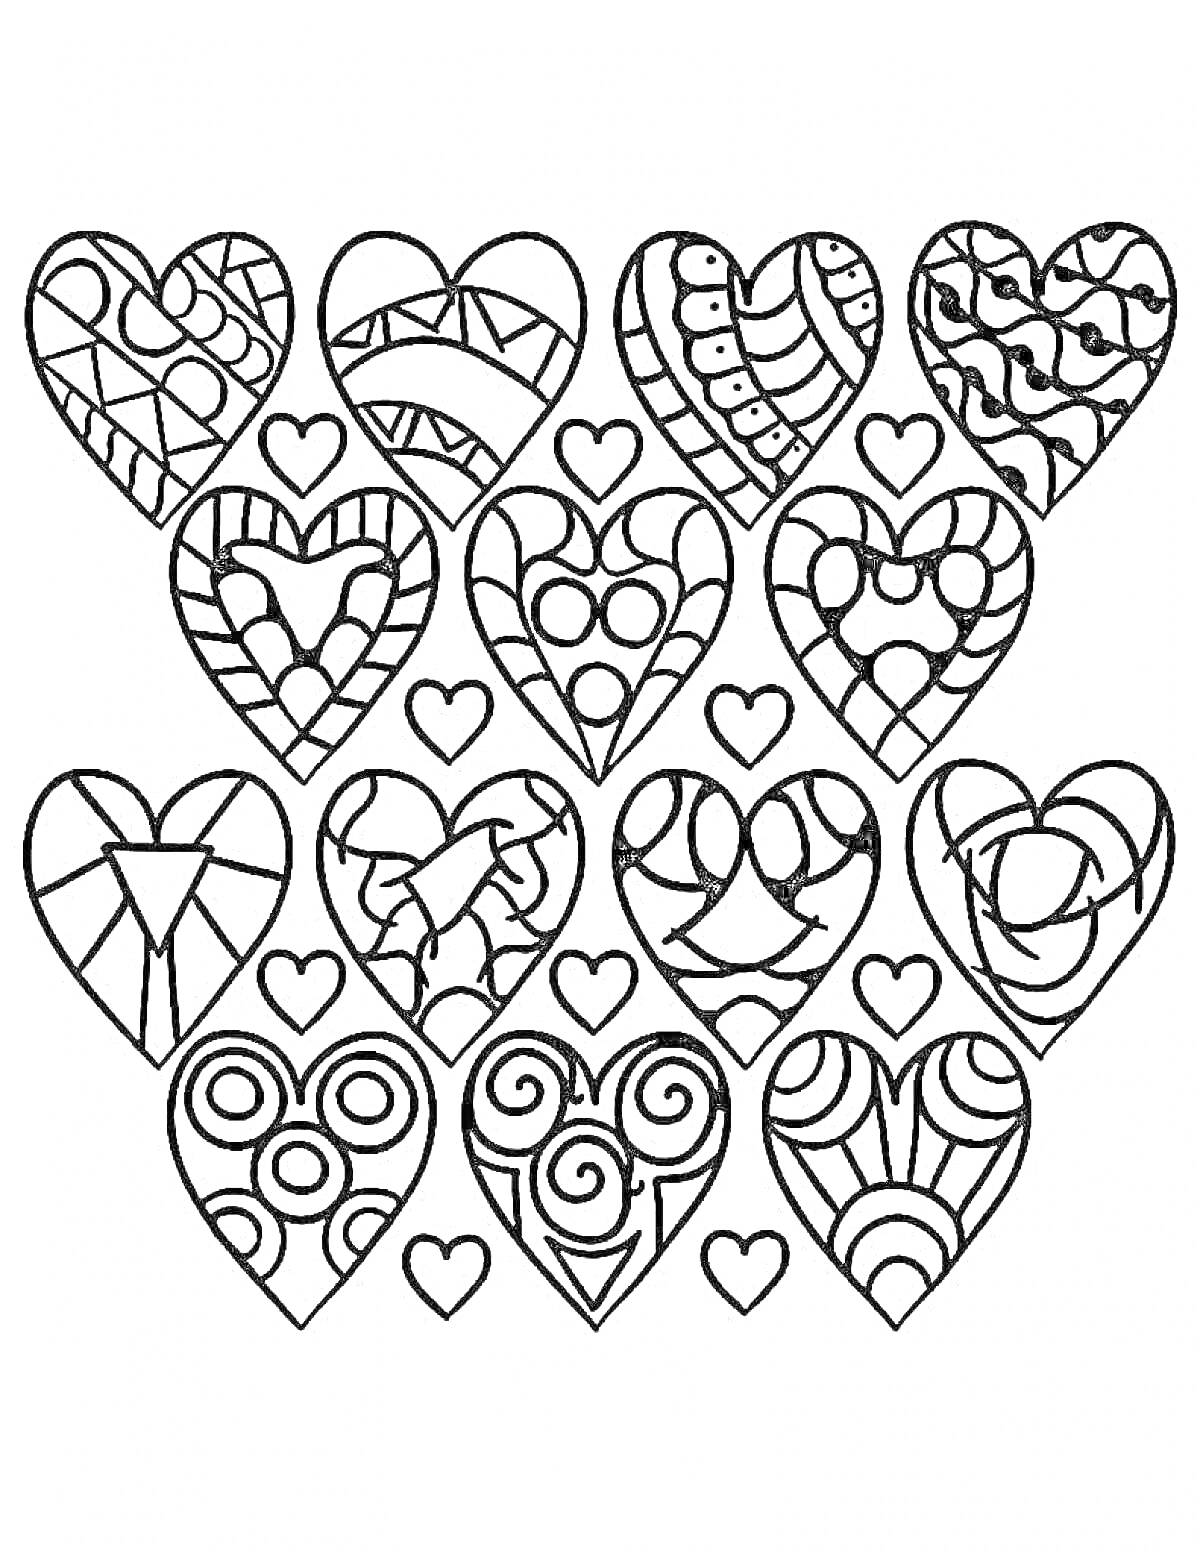 Раскраска Сердца антистресс с различными узорами и орнаментами